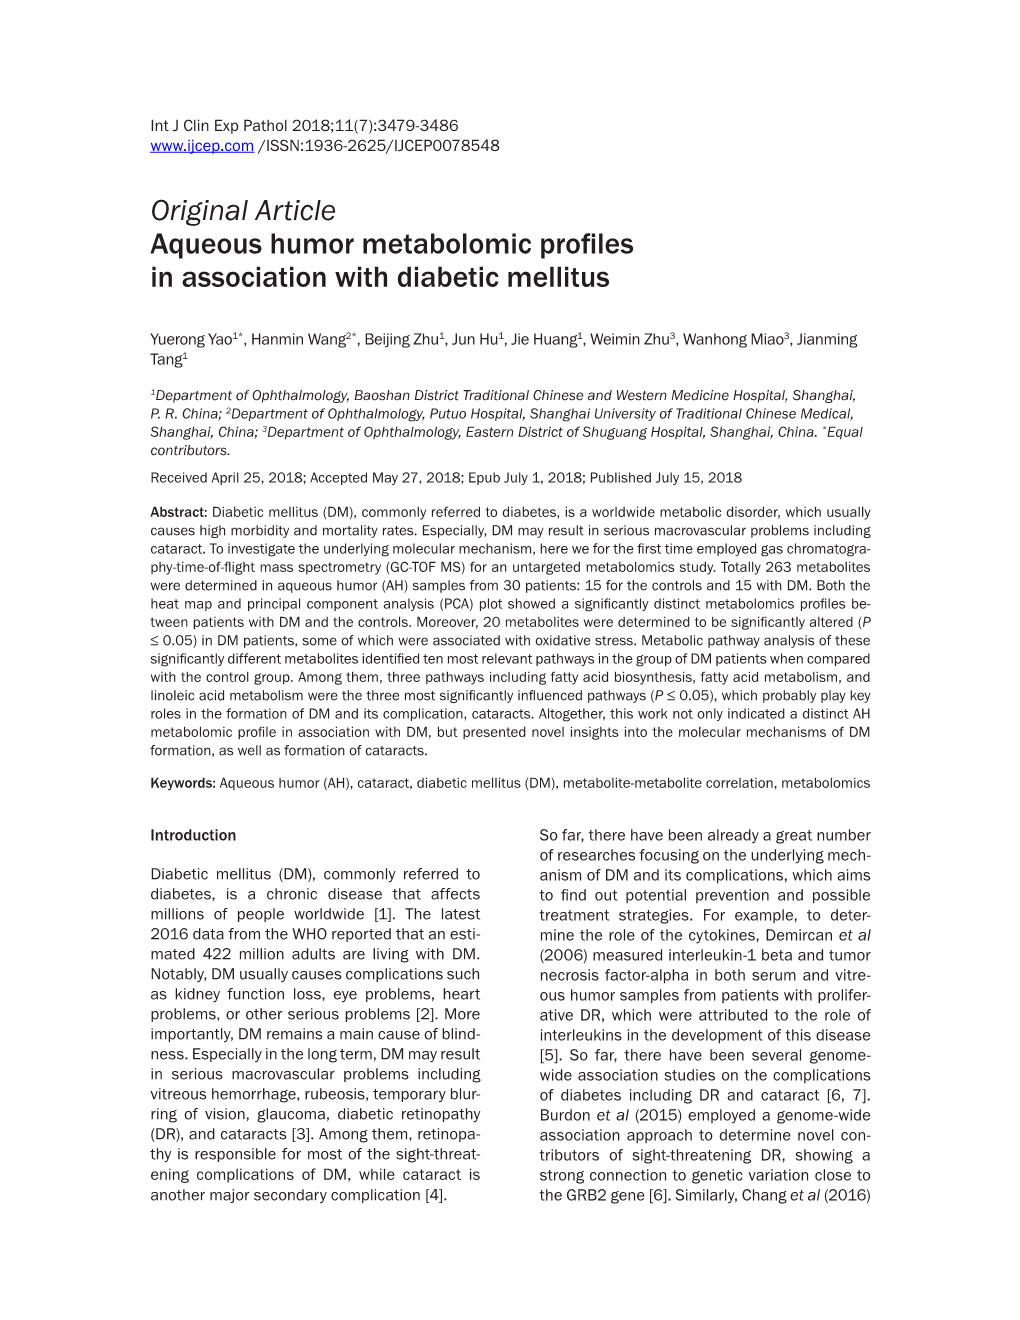 Original Article Aqueous Humor Metabolomic Profiles in Association with Diabetic Mellitus